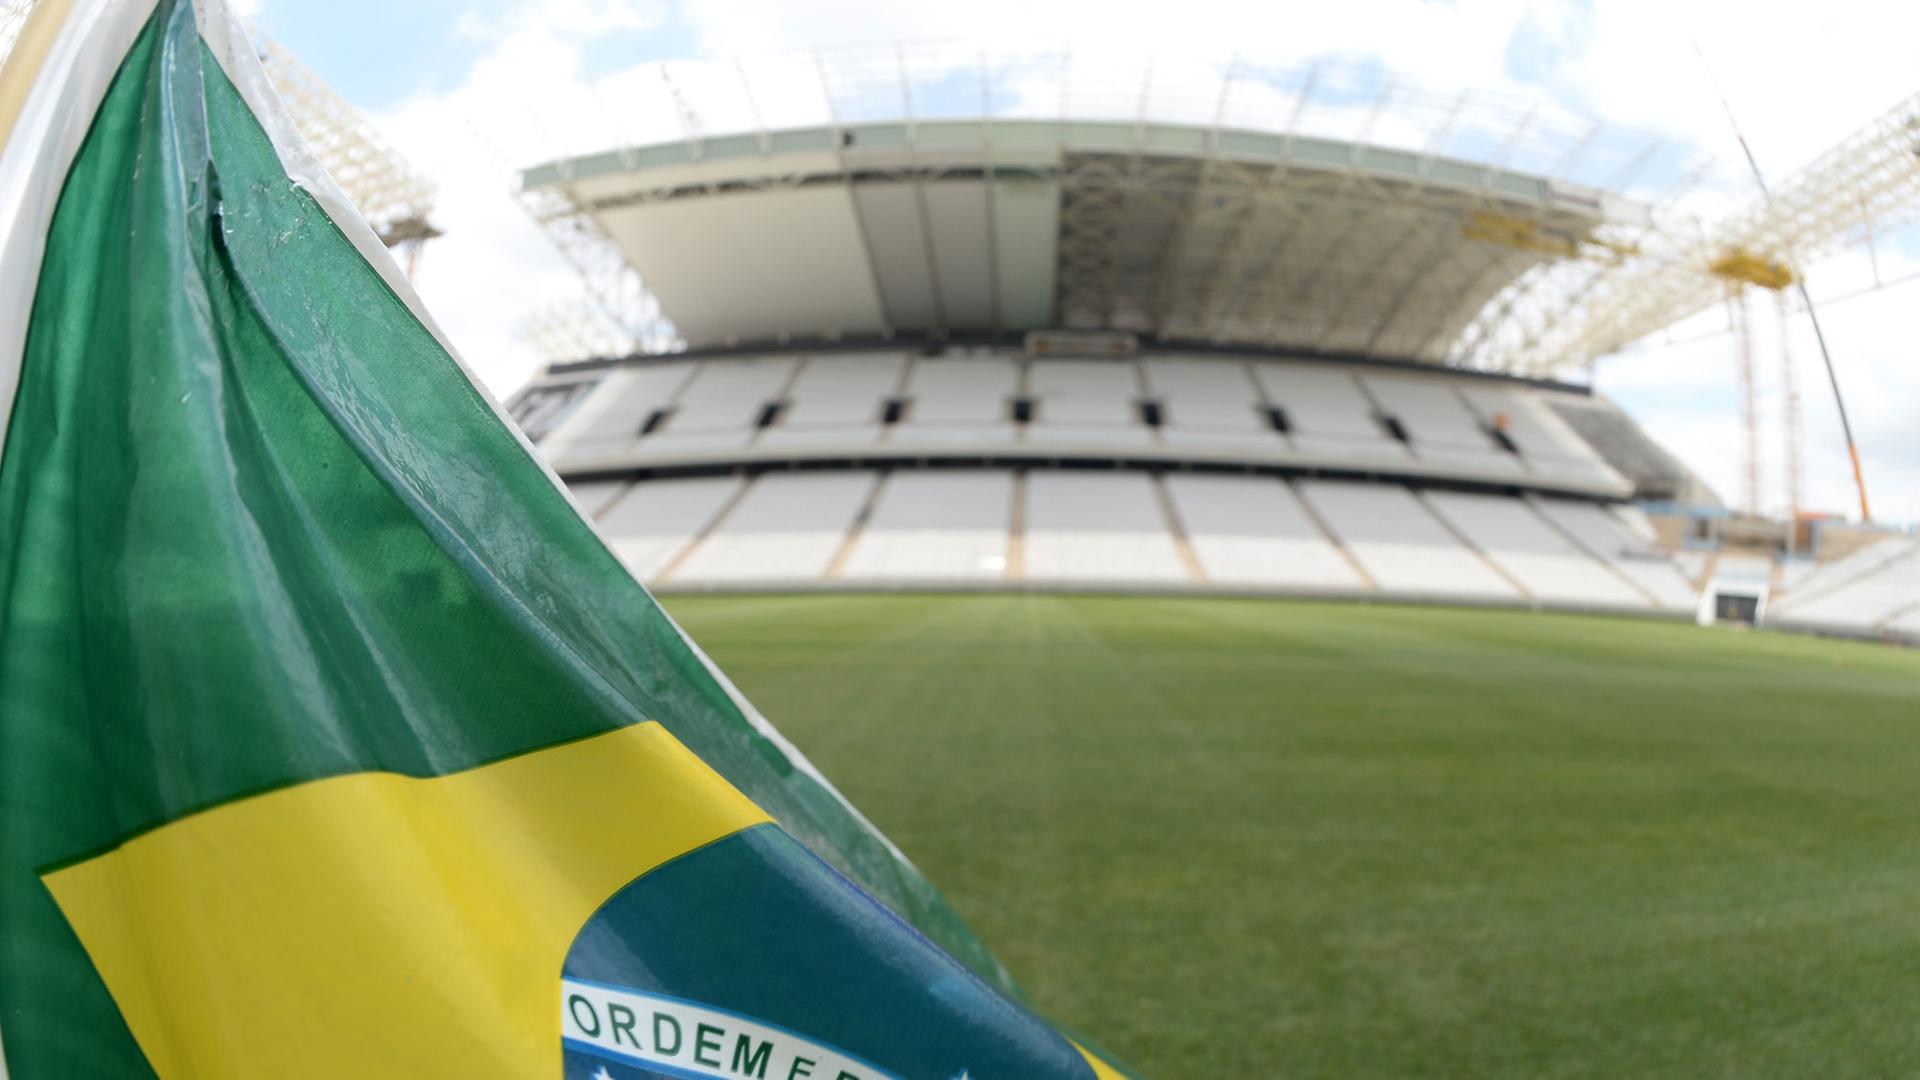 Eine brasilianische Flagge im Stadion "Arena Corinthians", aufgenommen am 16.12.2013 in der brasilianischen Stadt Sao Paulo.